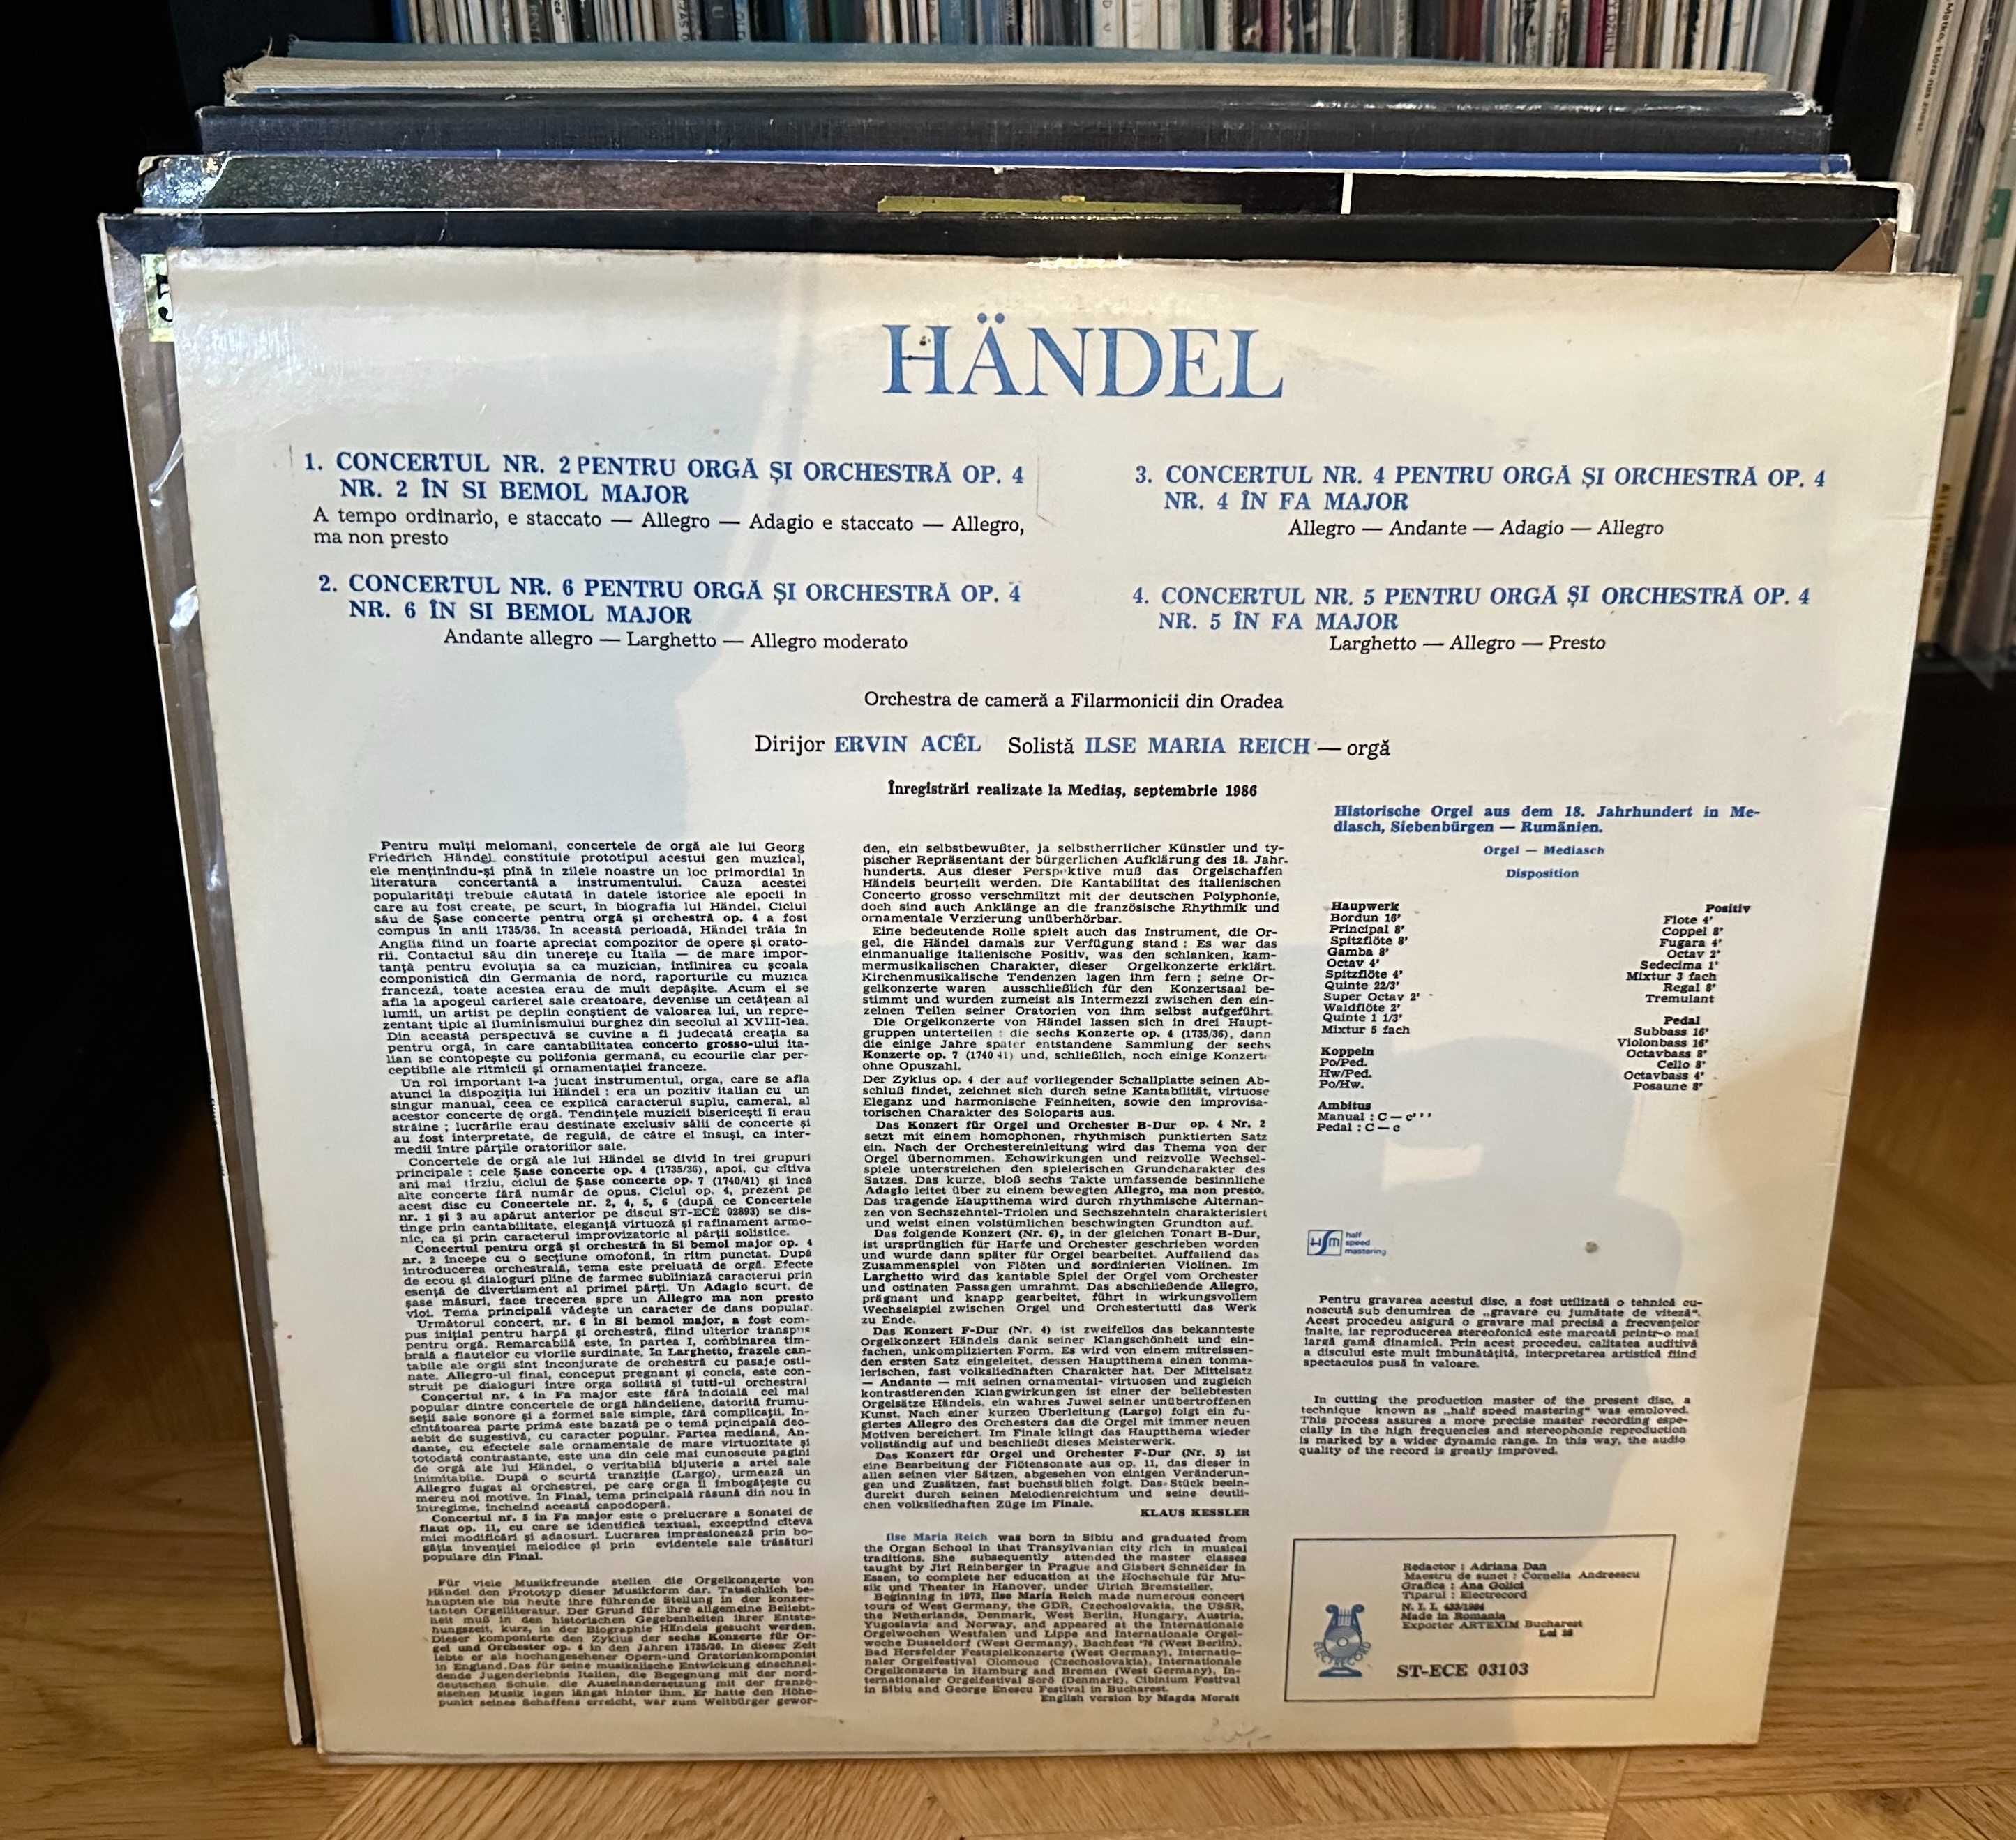 Handel concertos No. 2,4,5,6, for organ and orchestra